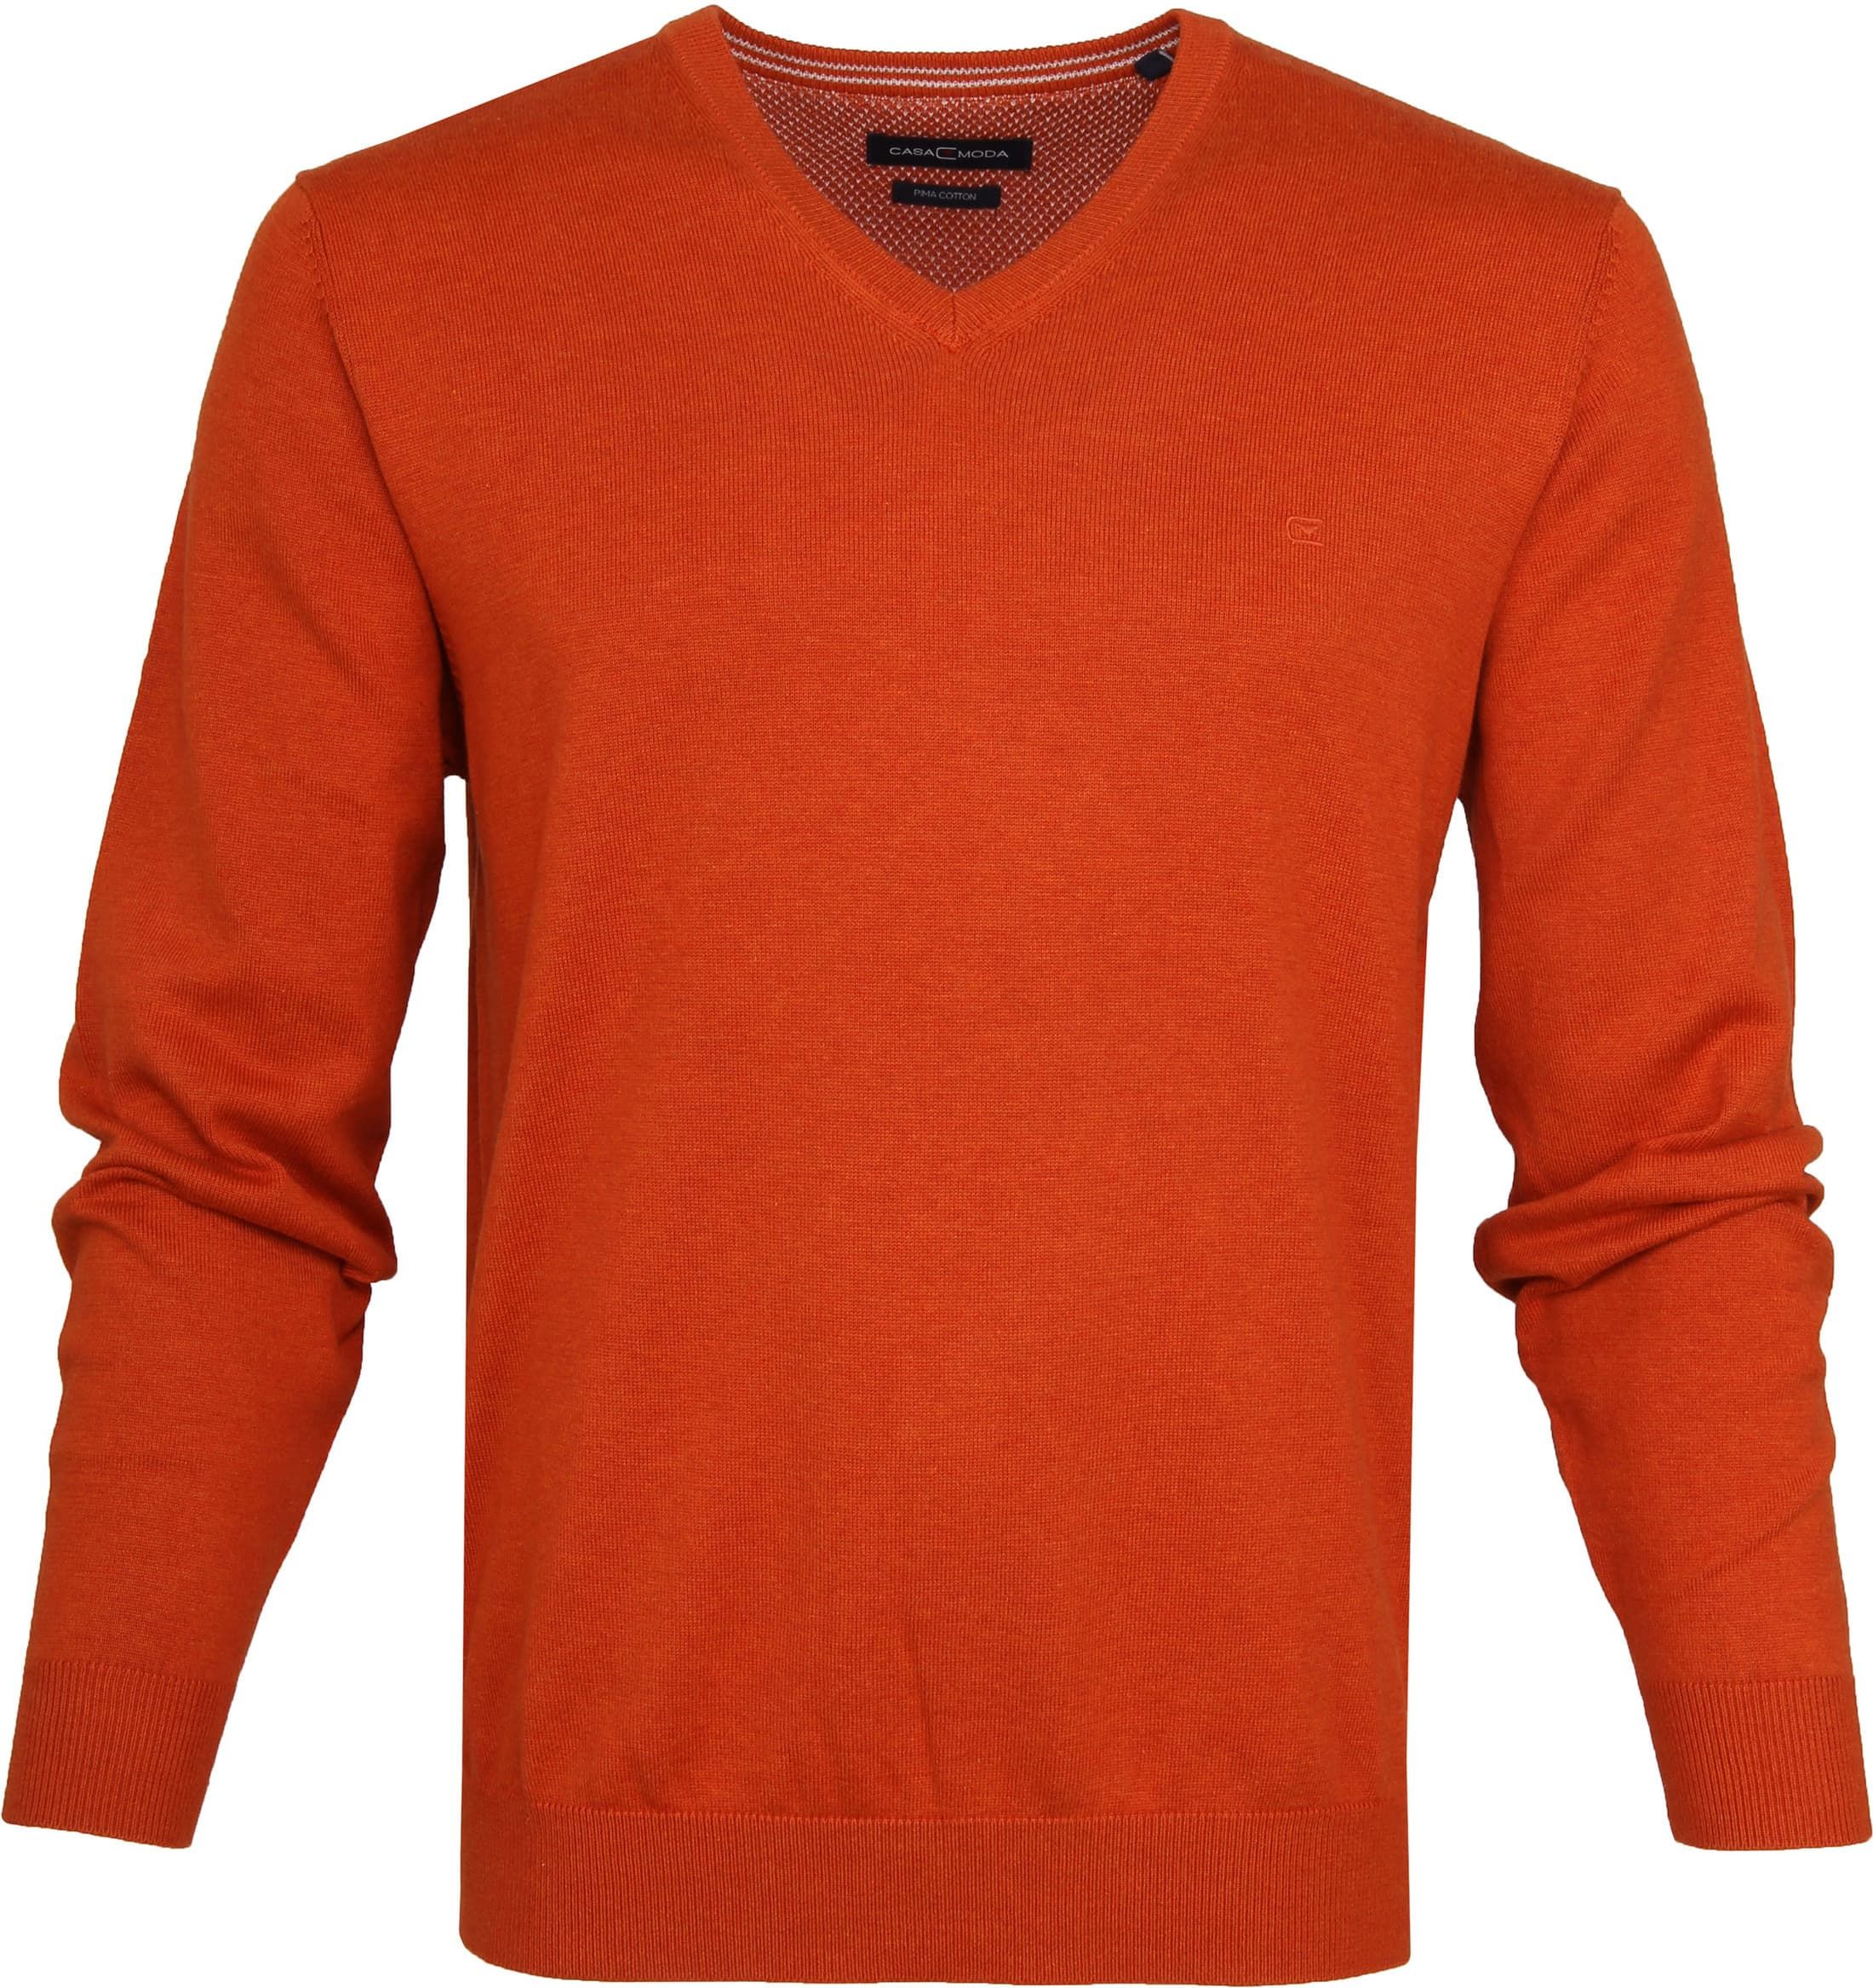 Casa Moda Pullover Orange size L